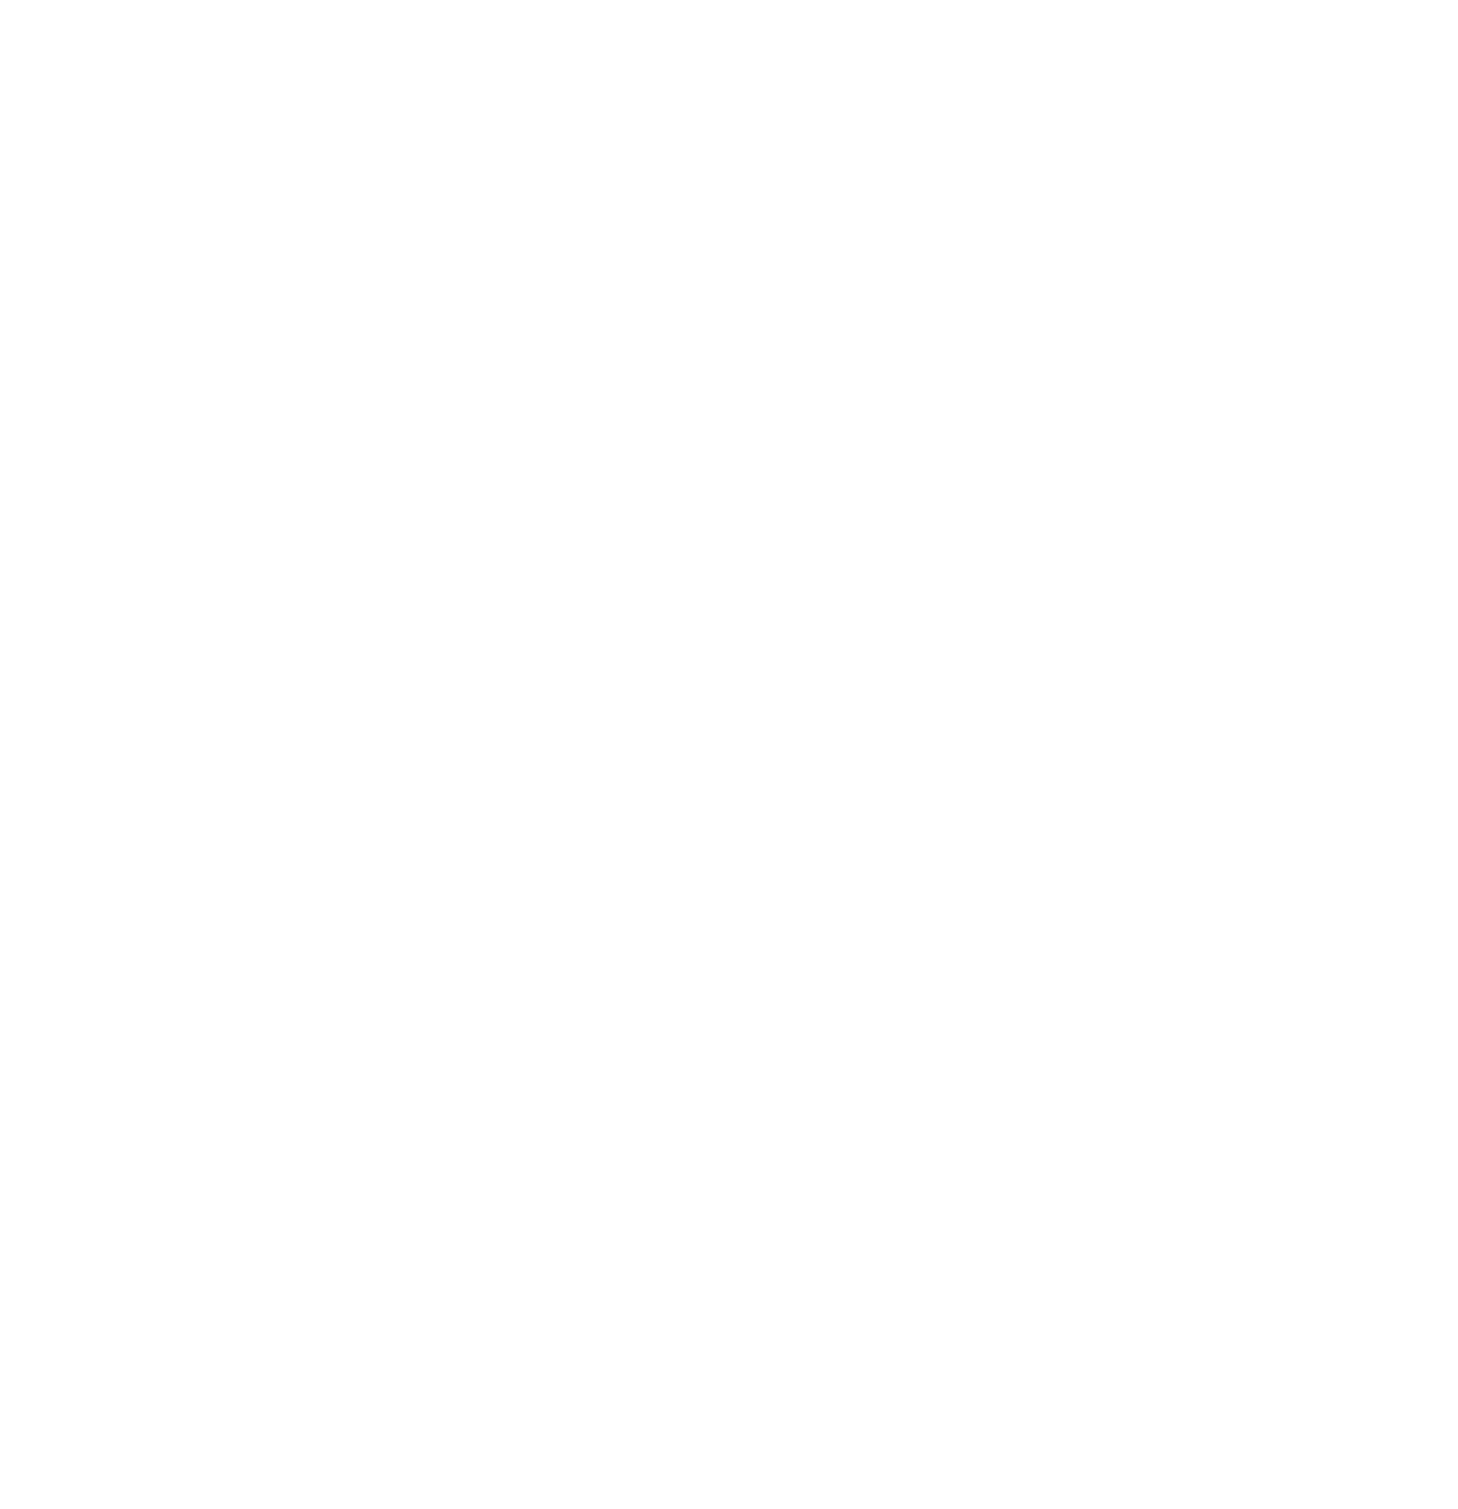 SES S.A. logo pour fonds sombres (PNG transparent)